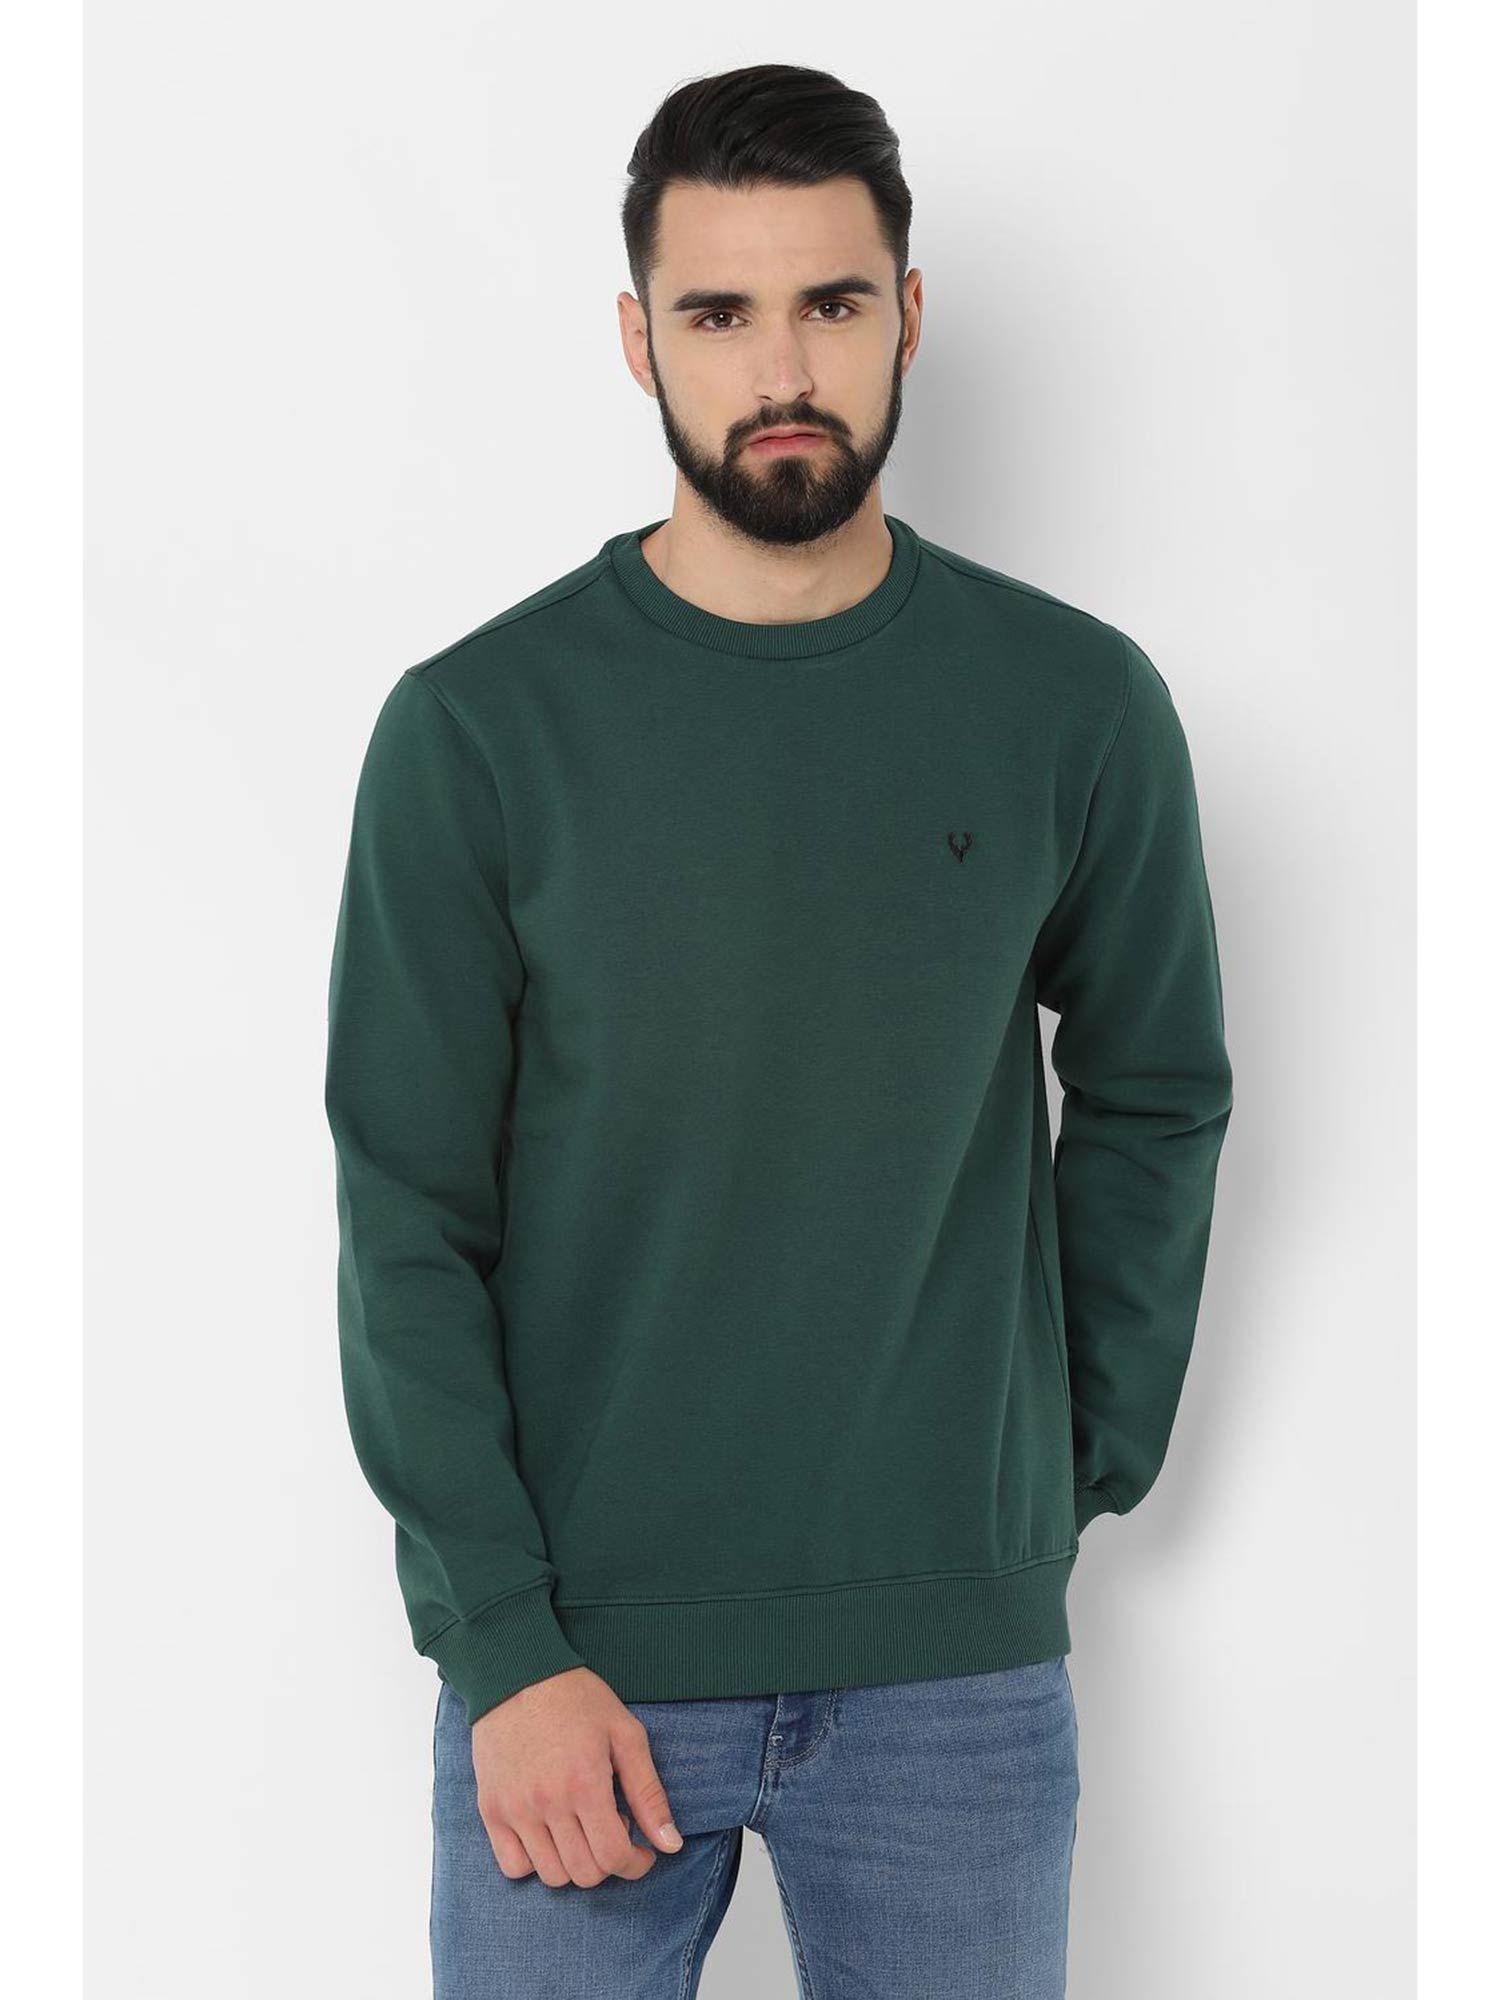 men solid green sweatshirt